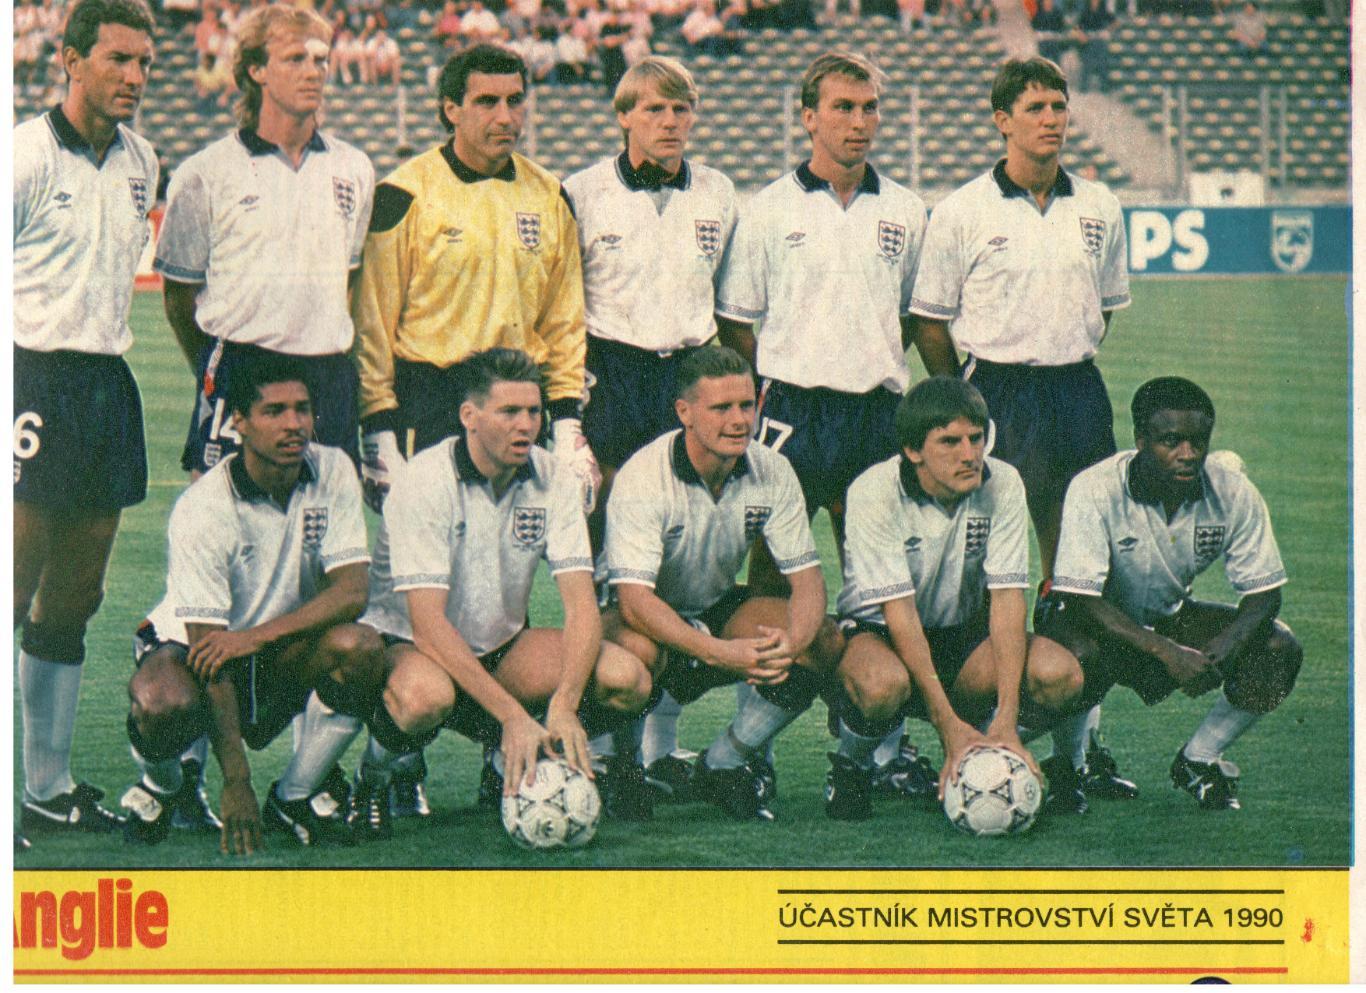 Участники чемпионата мира 1990. Англия